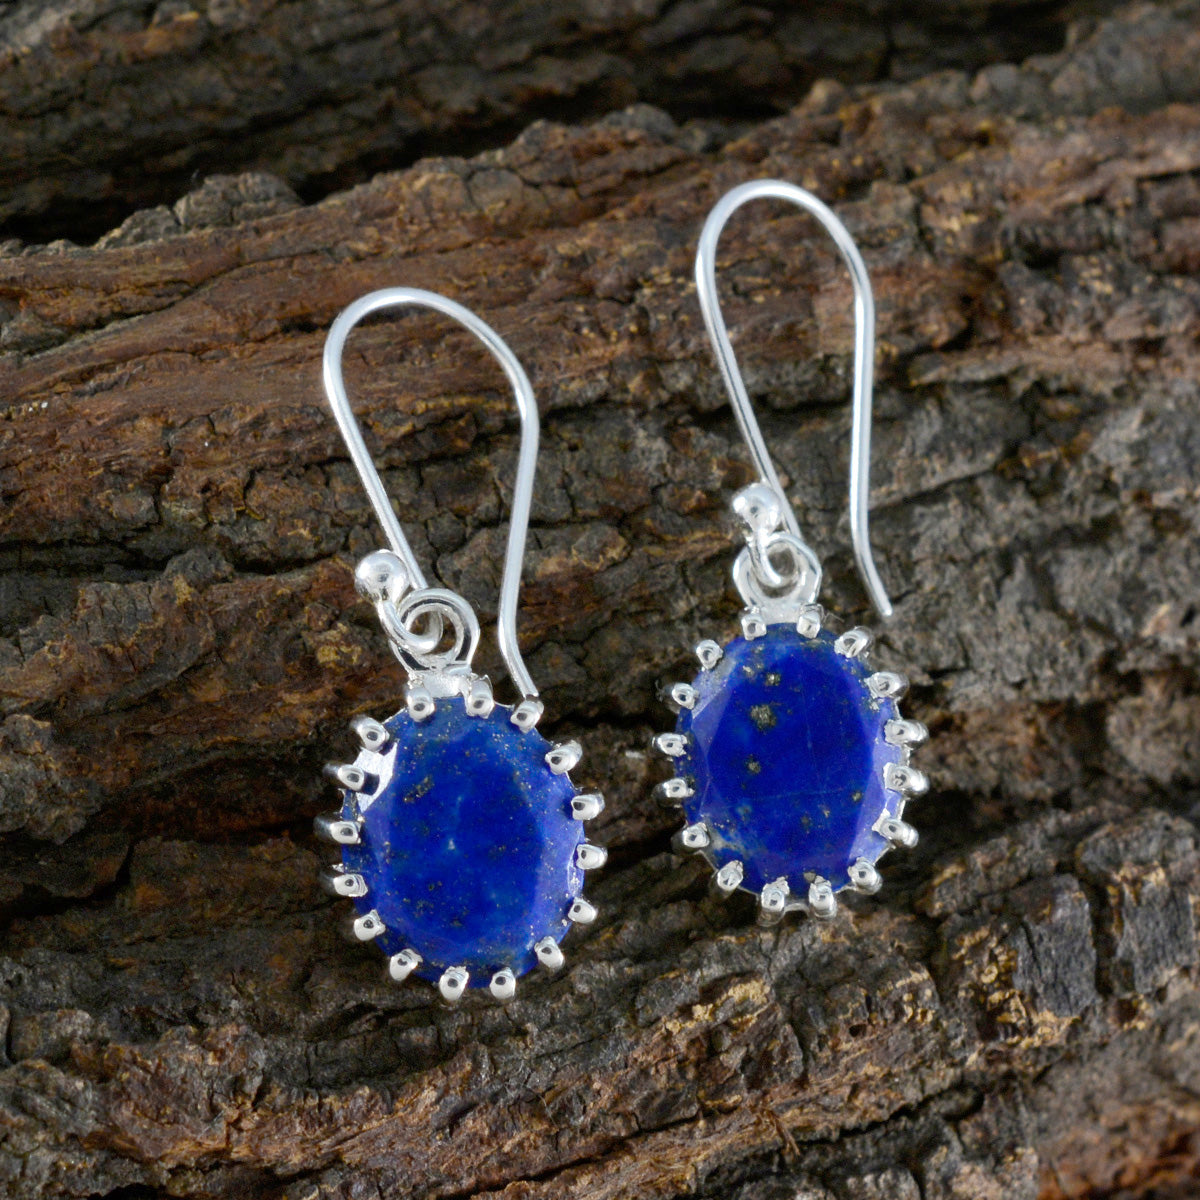 Riyo chaud 925 boucle d'oreille en argent sterling pour les femmes lapis lazuli boucle d'oreille réglage de la lunette boucle d'oreille bleue boucle d'oreille pendante